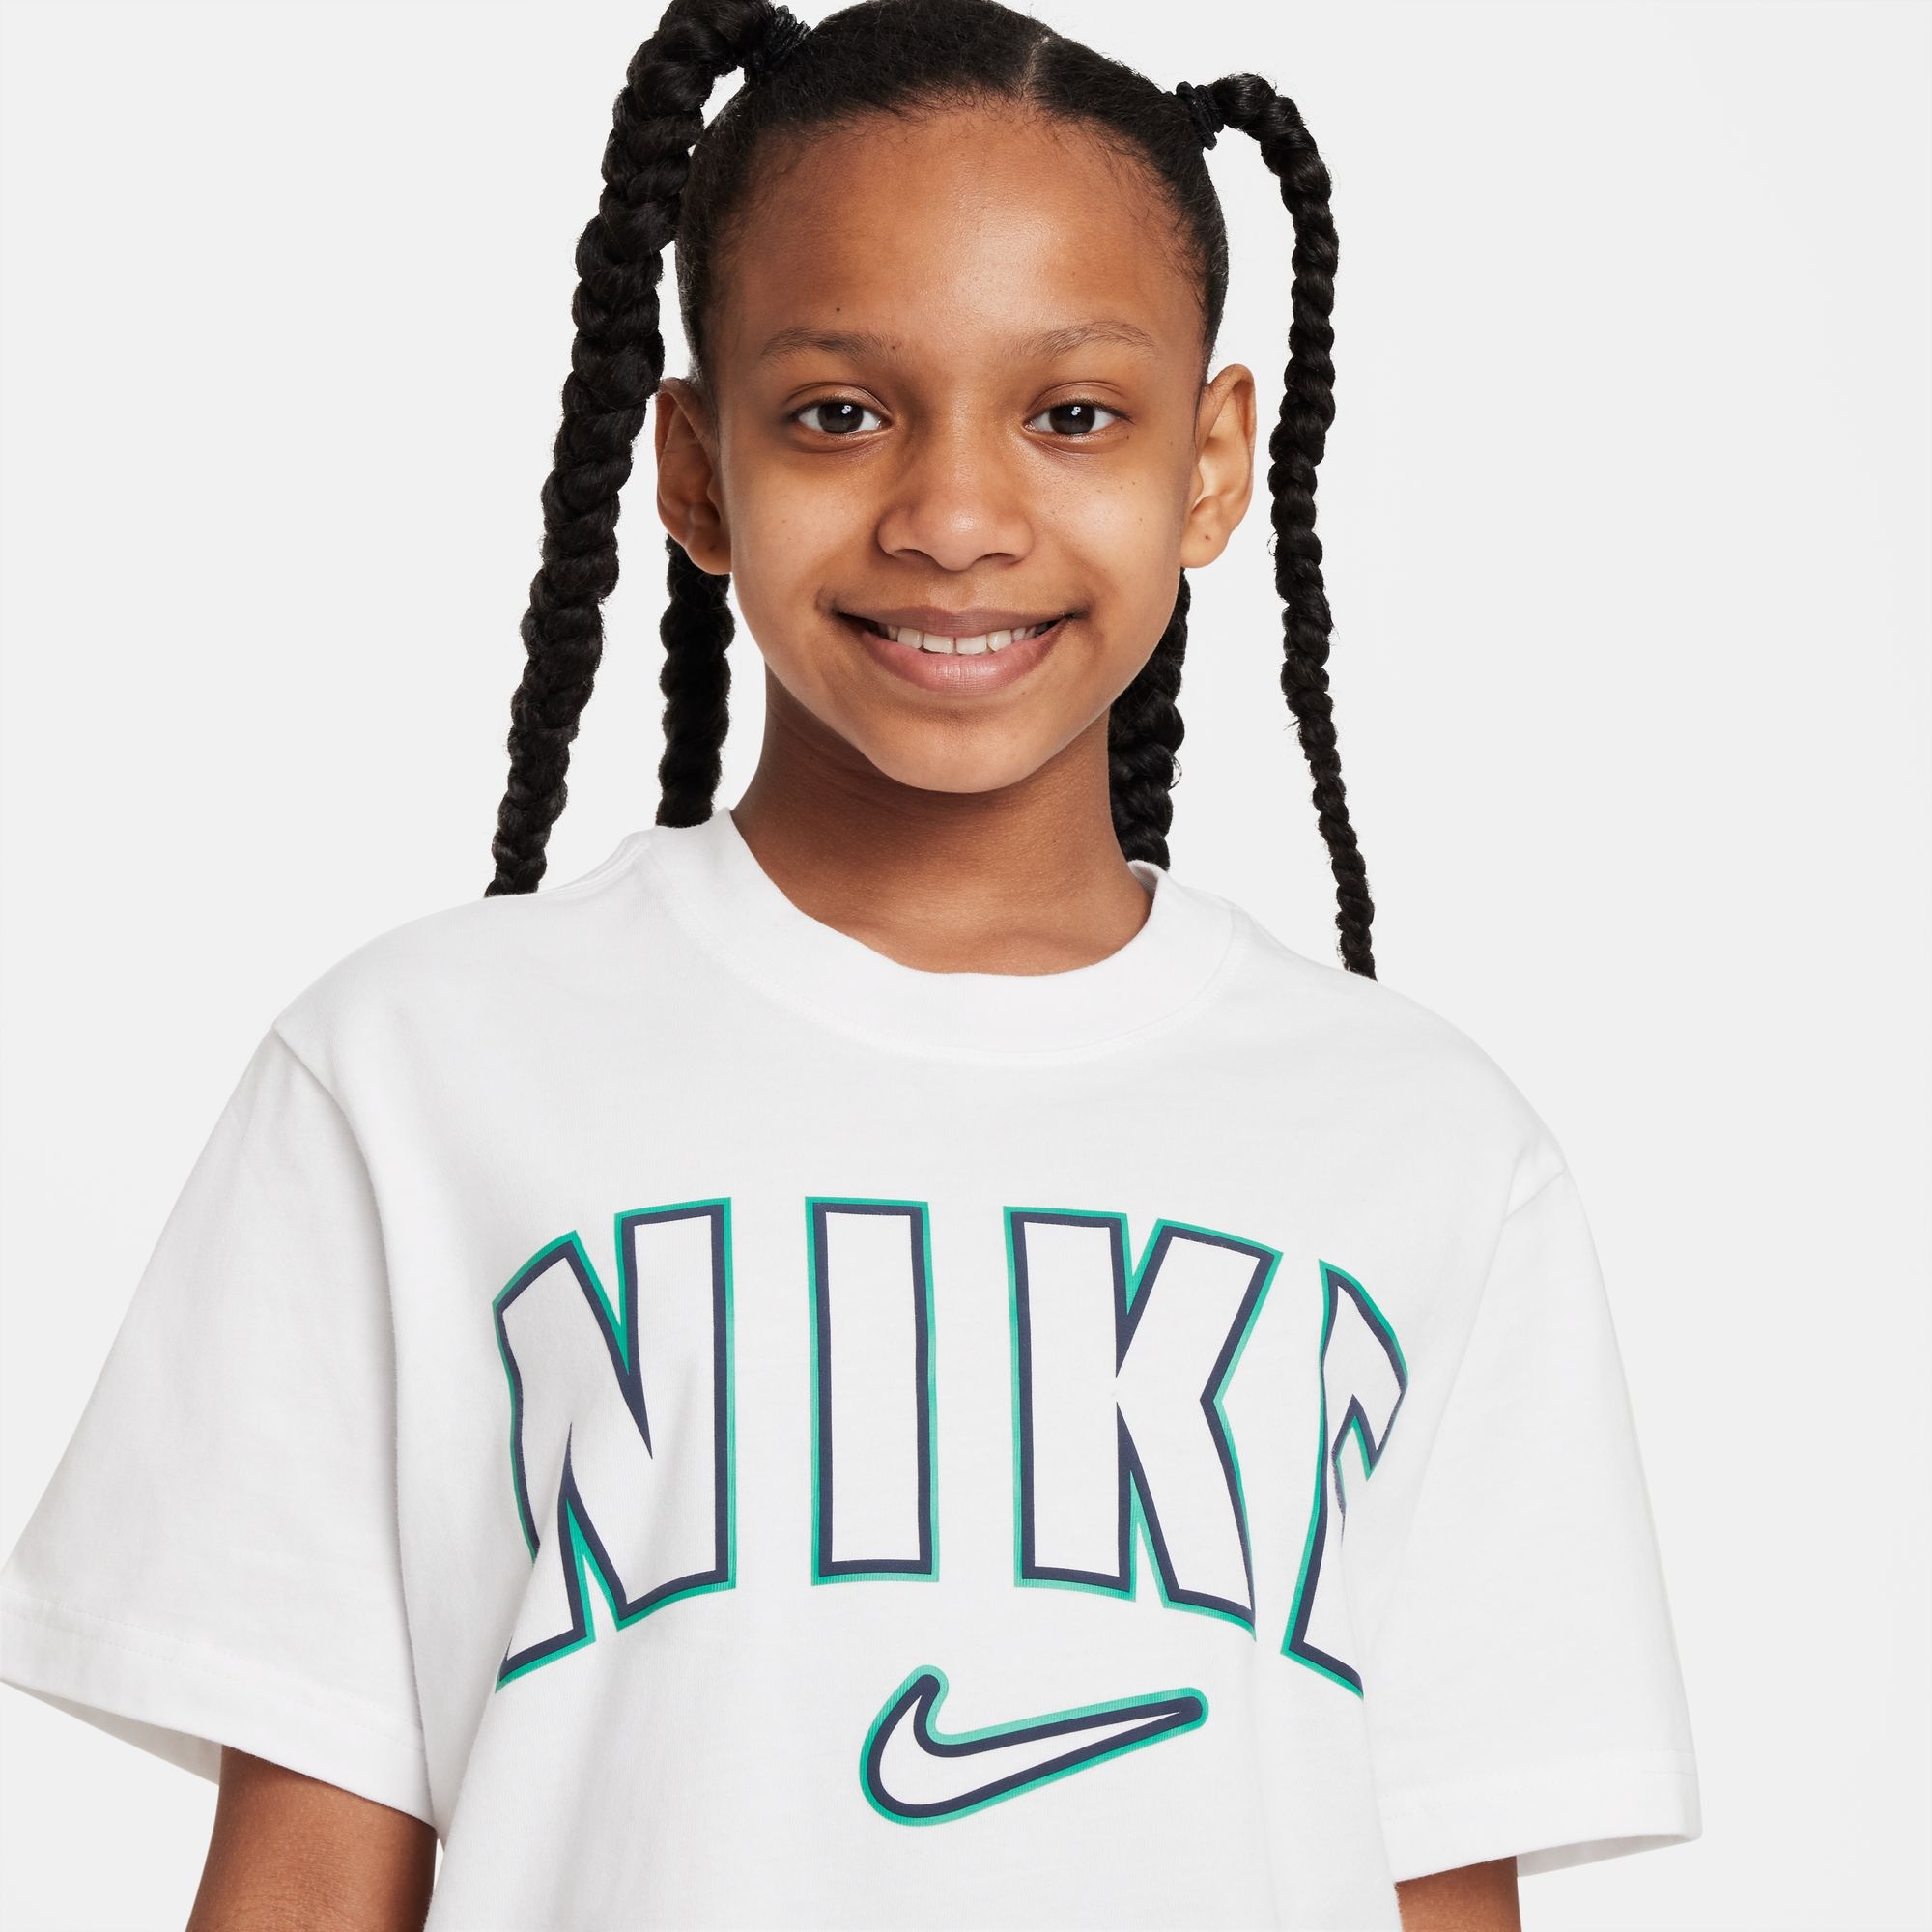 OTTO Nike - bei »G online PRNT für NSW Kinder« BOXY T-Shirt Sportswear Sleeve Short TEE